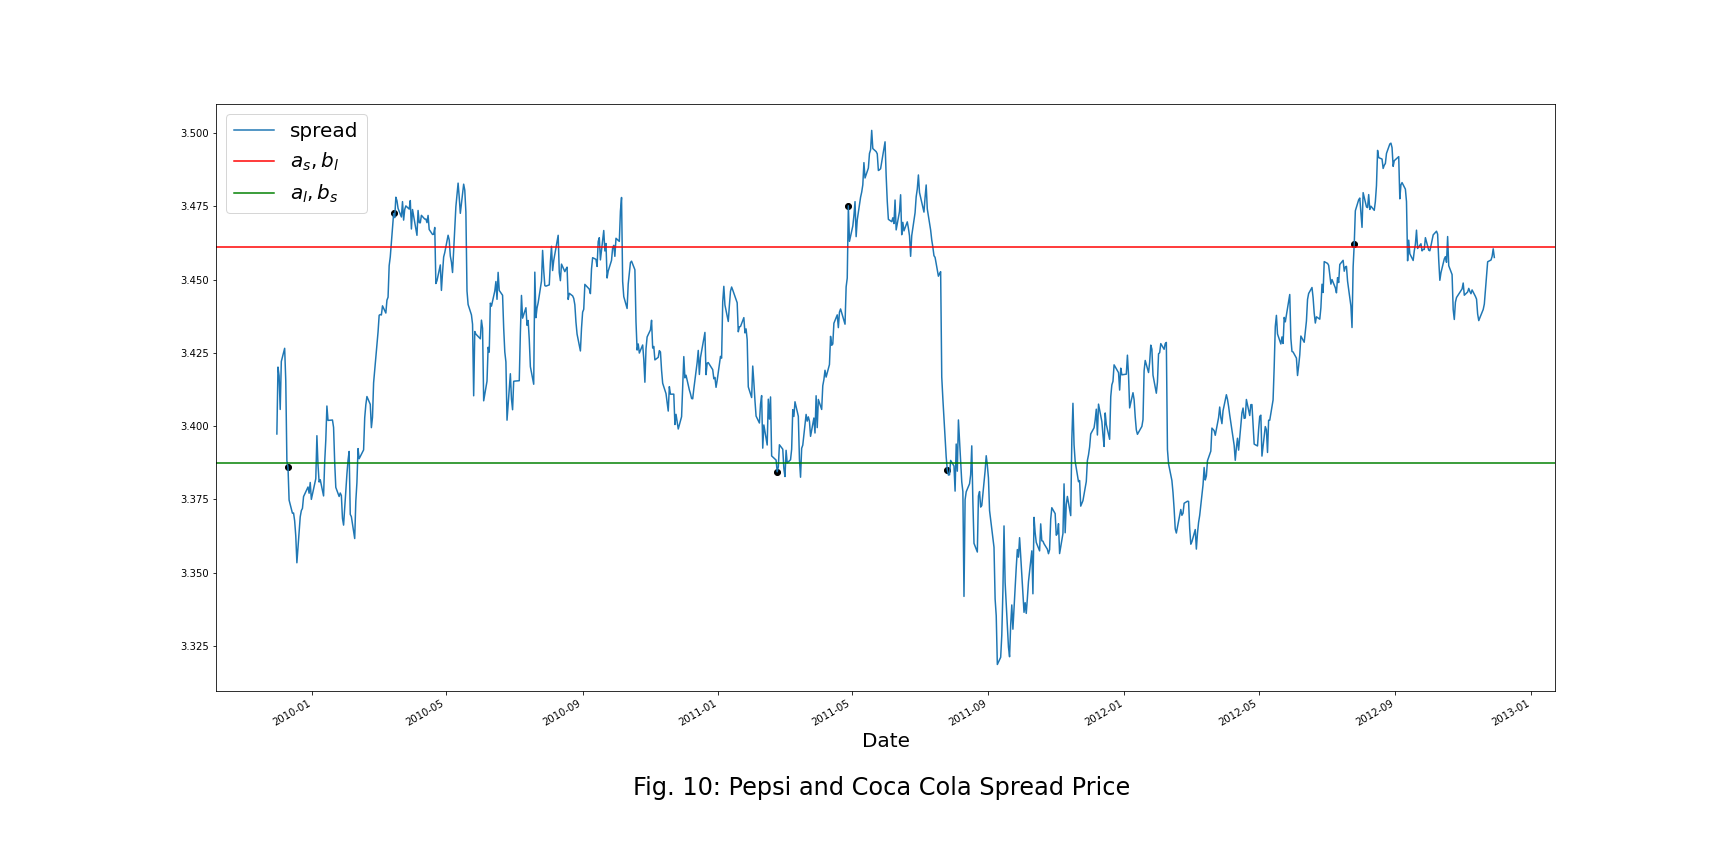 Pepsi and Coca Cola Spread Price